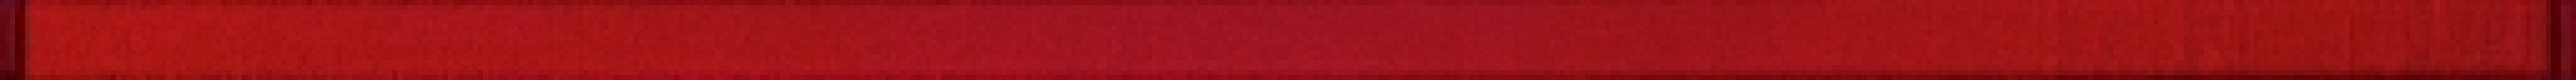 Бордюр Avangarde Glass Red